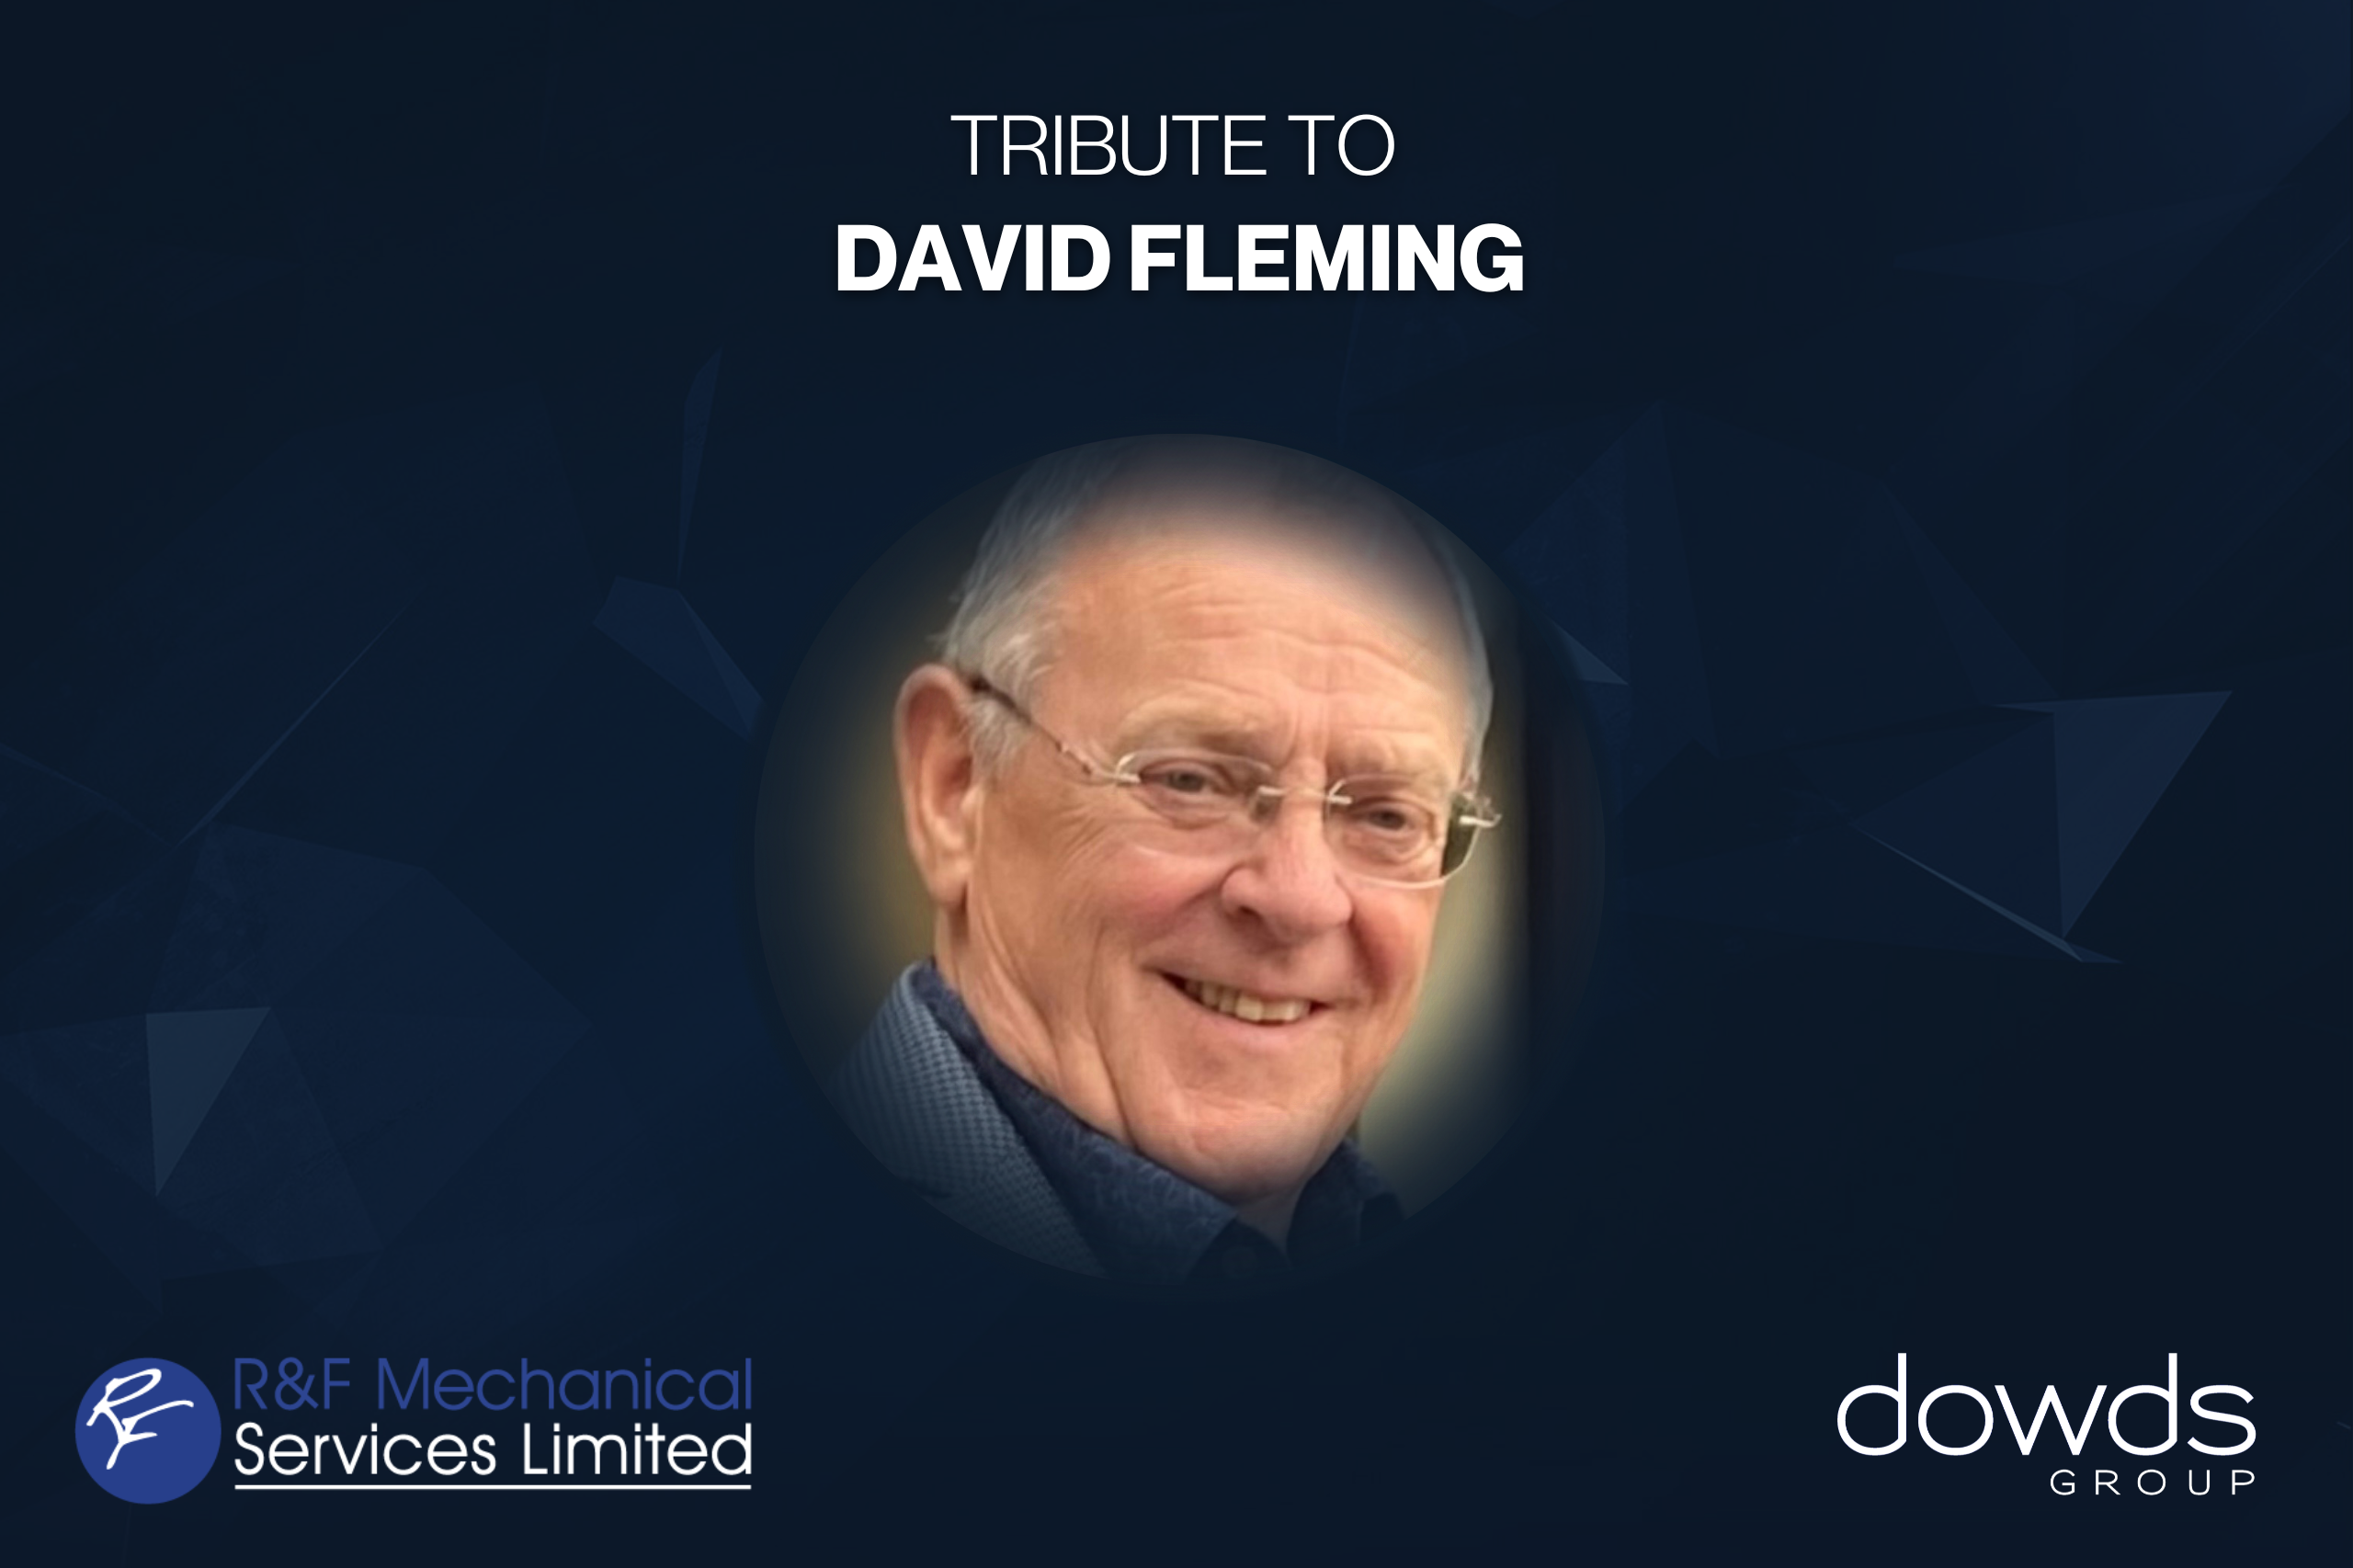 David Fleming